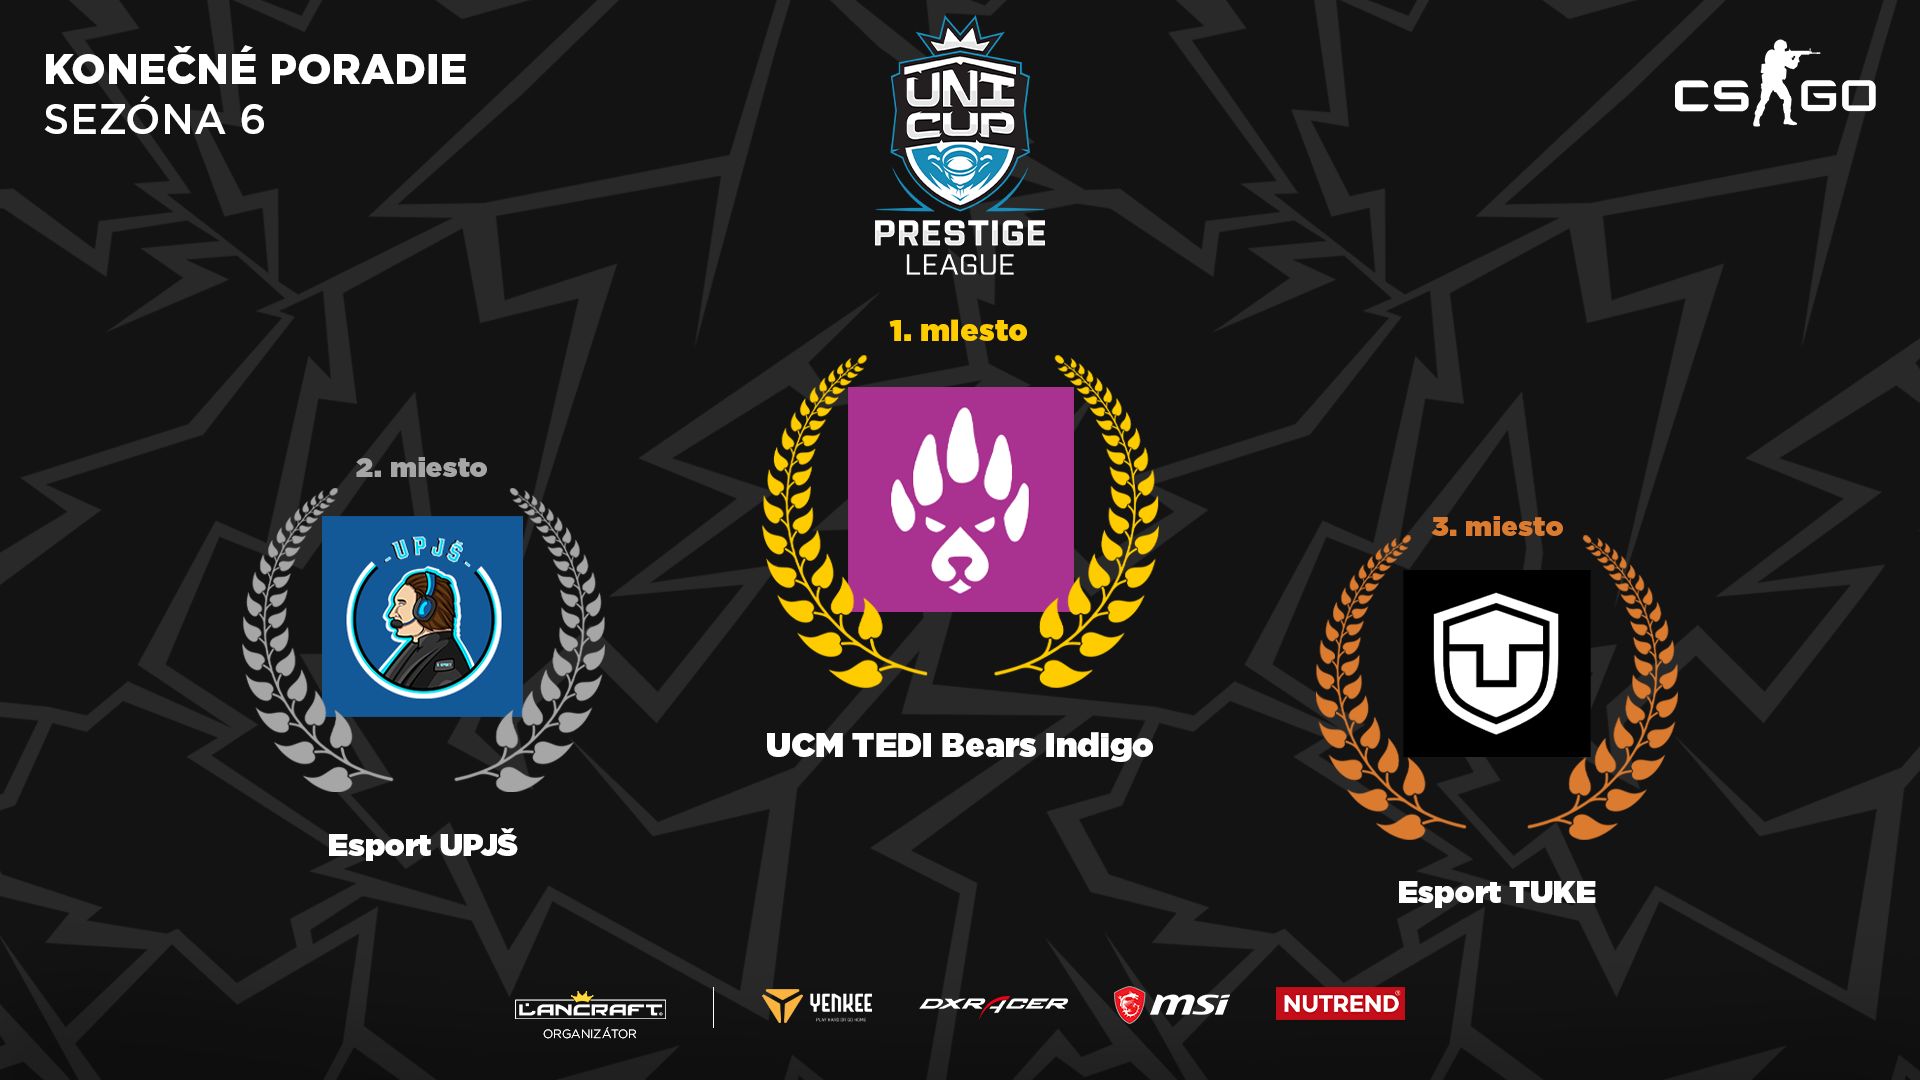 Konečné poradie šiestej sezóny UniCup Prestige League v CS:GO.